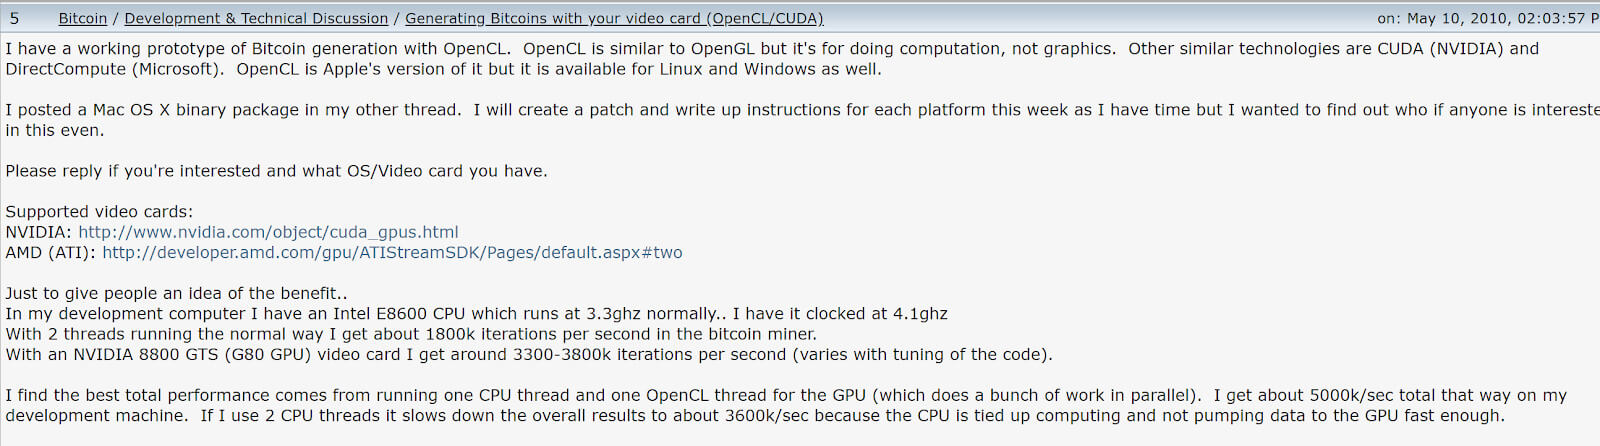 Кто придумал майнинг. Пост Ханеча на Bitcointalk с предложением концепции майнинга на GPU. Фото.